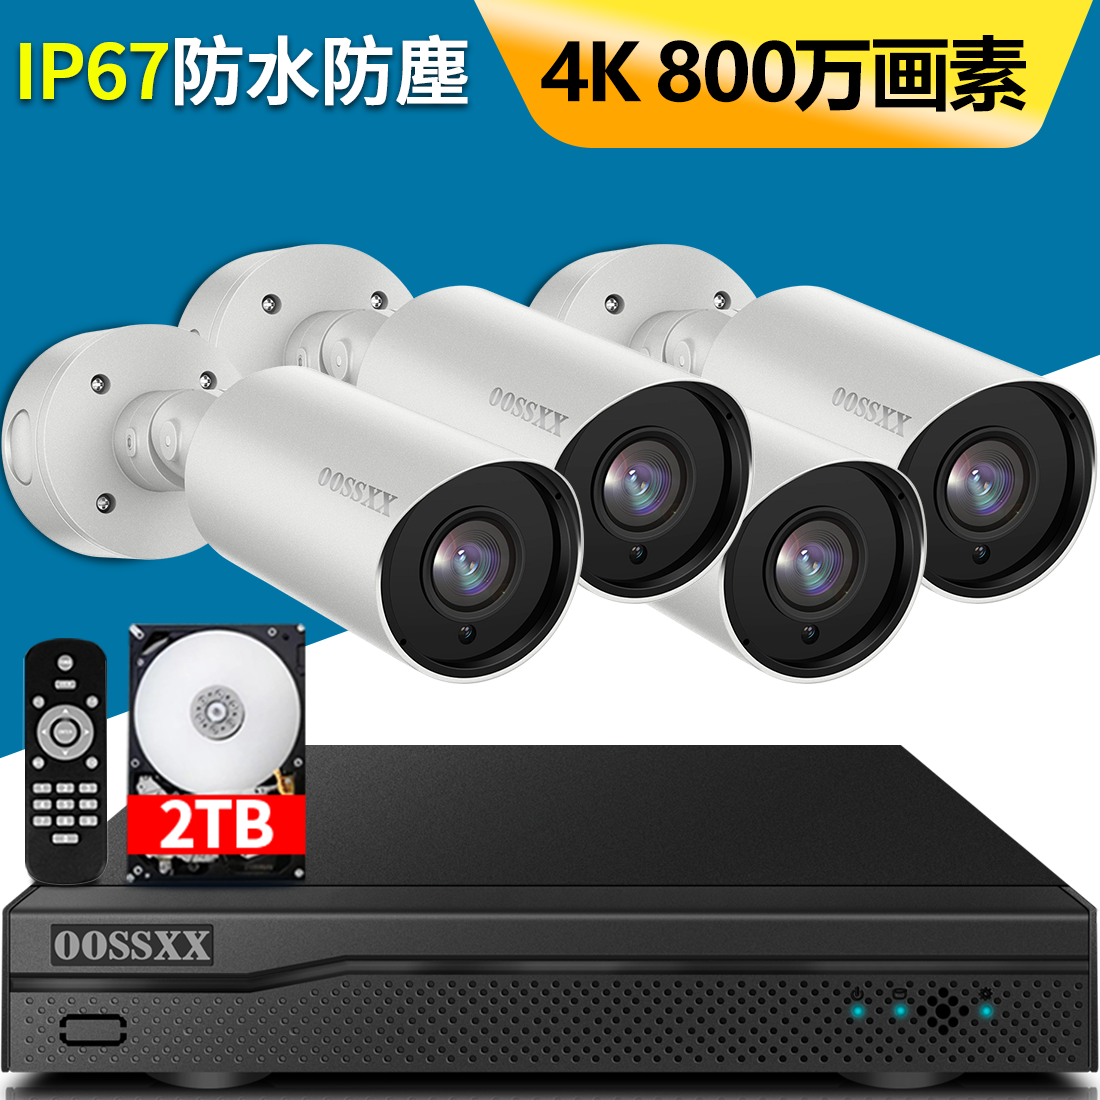 防犯カメラ 家庭用 監視カメラ セット 4K 800万超高画素 双方向通話